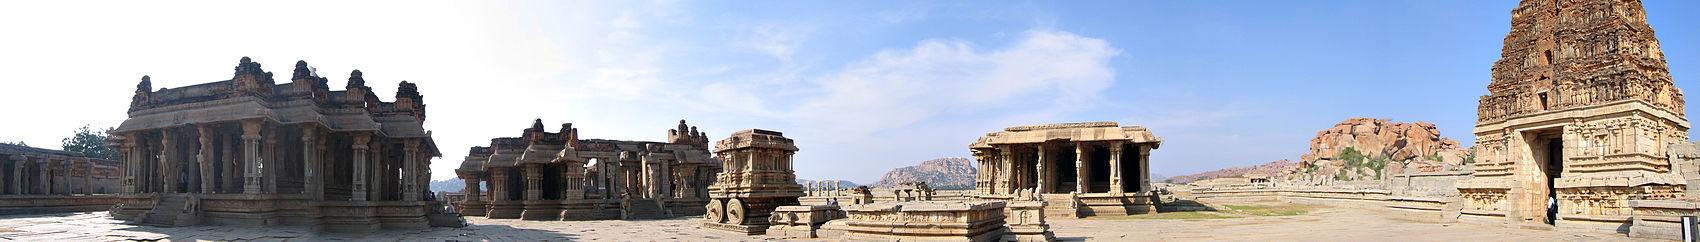 Panoramabild över Vittalatemplet, som byggdes under Deva Raya II tid. Templet utökades sedan under Krishnadevaraya styre.